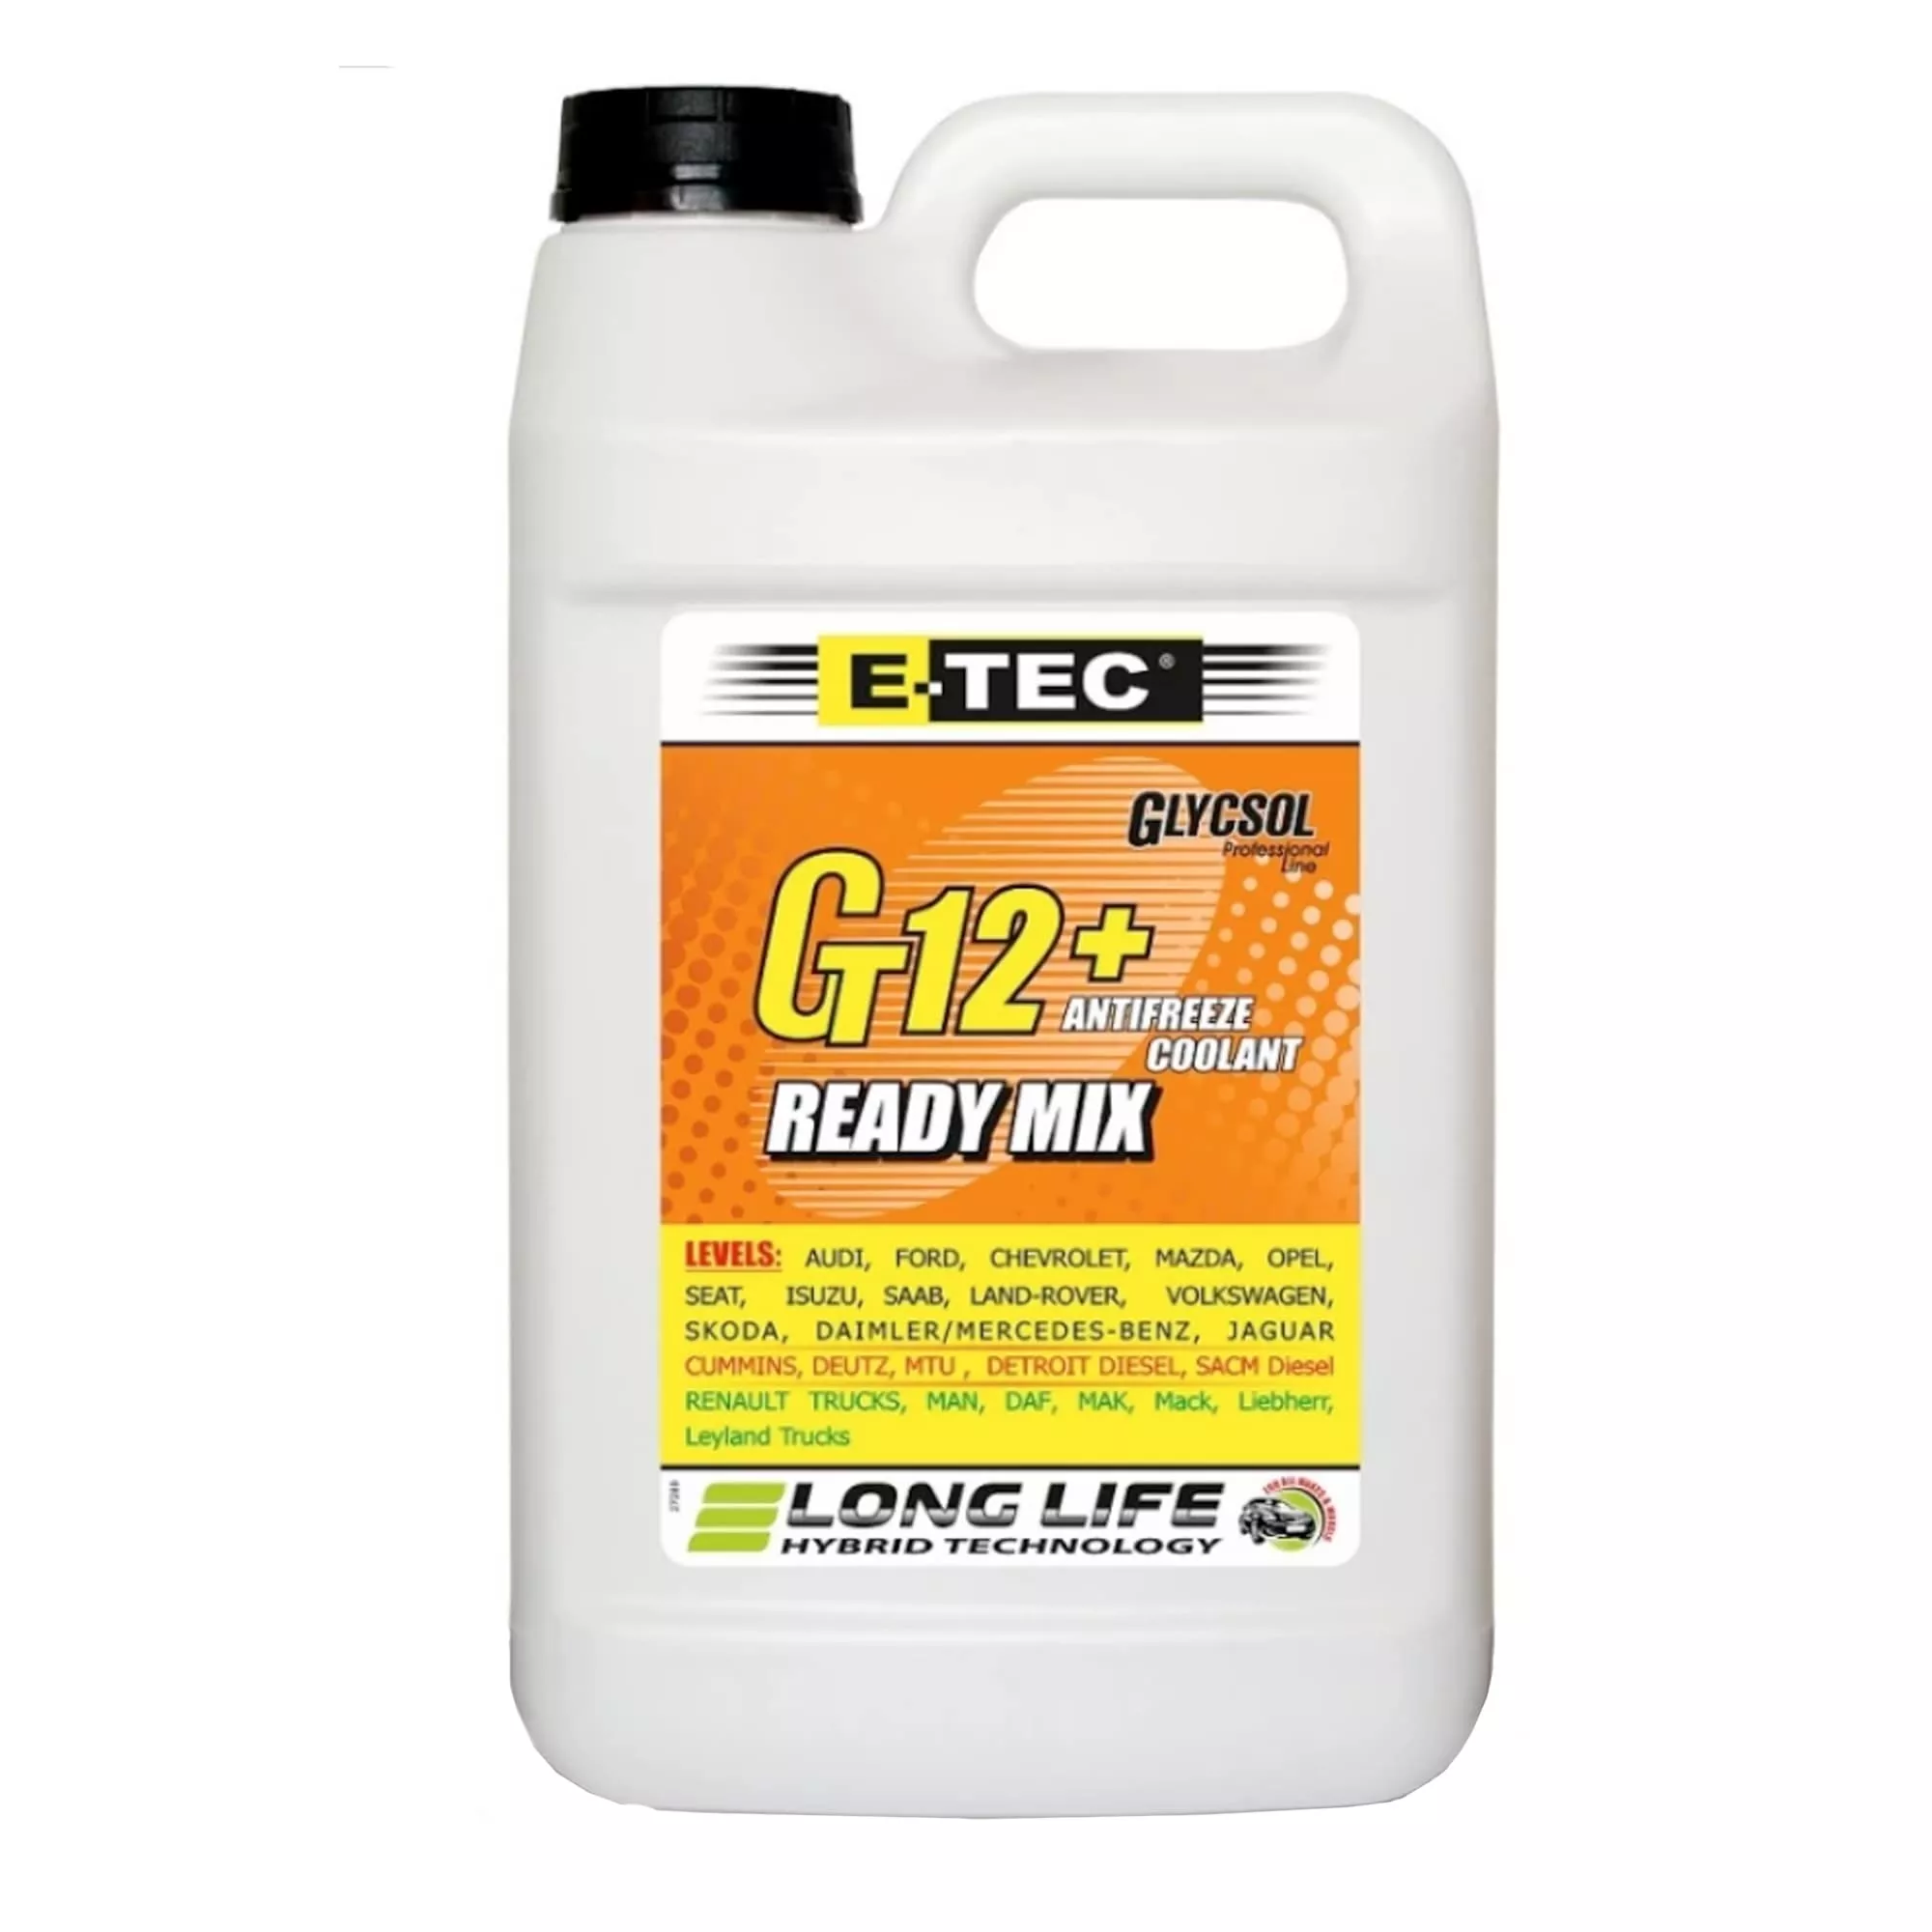 Антифриз E-Tec Glycsol XLC G12+ -40°C красный 4л (2856)